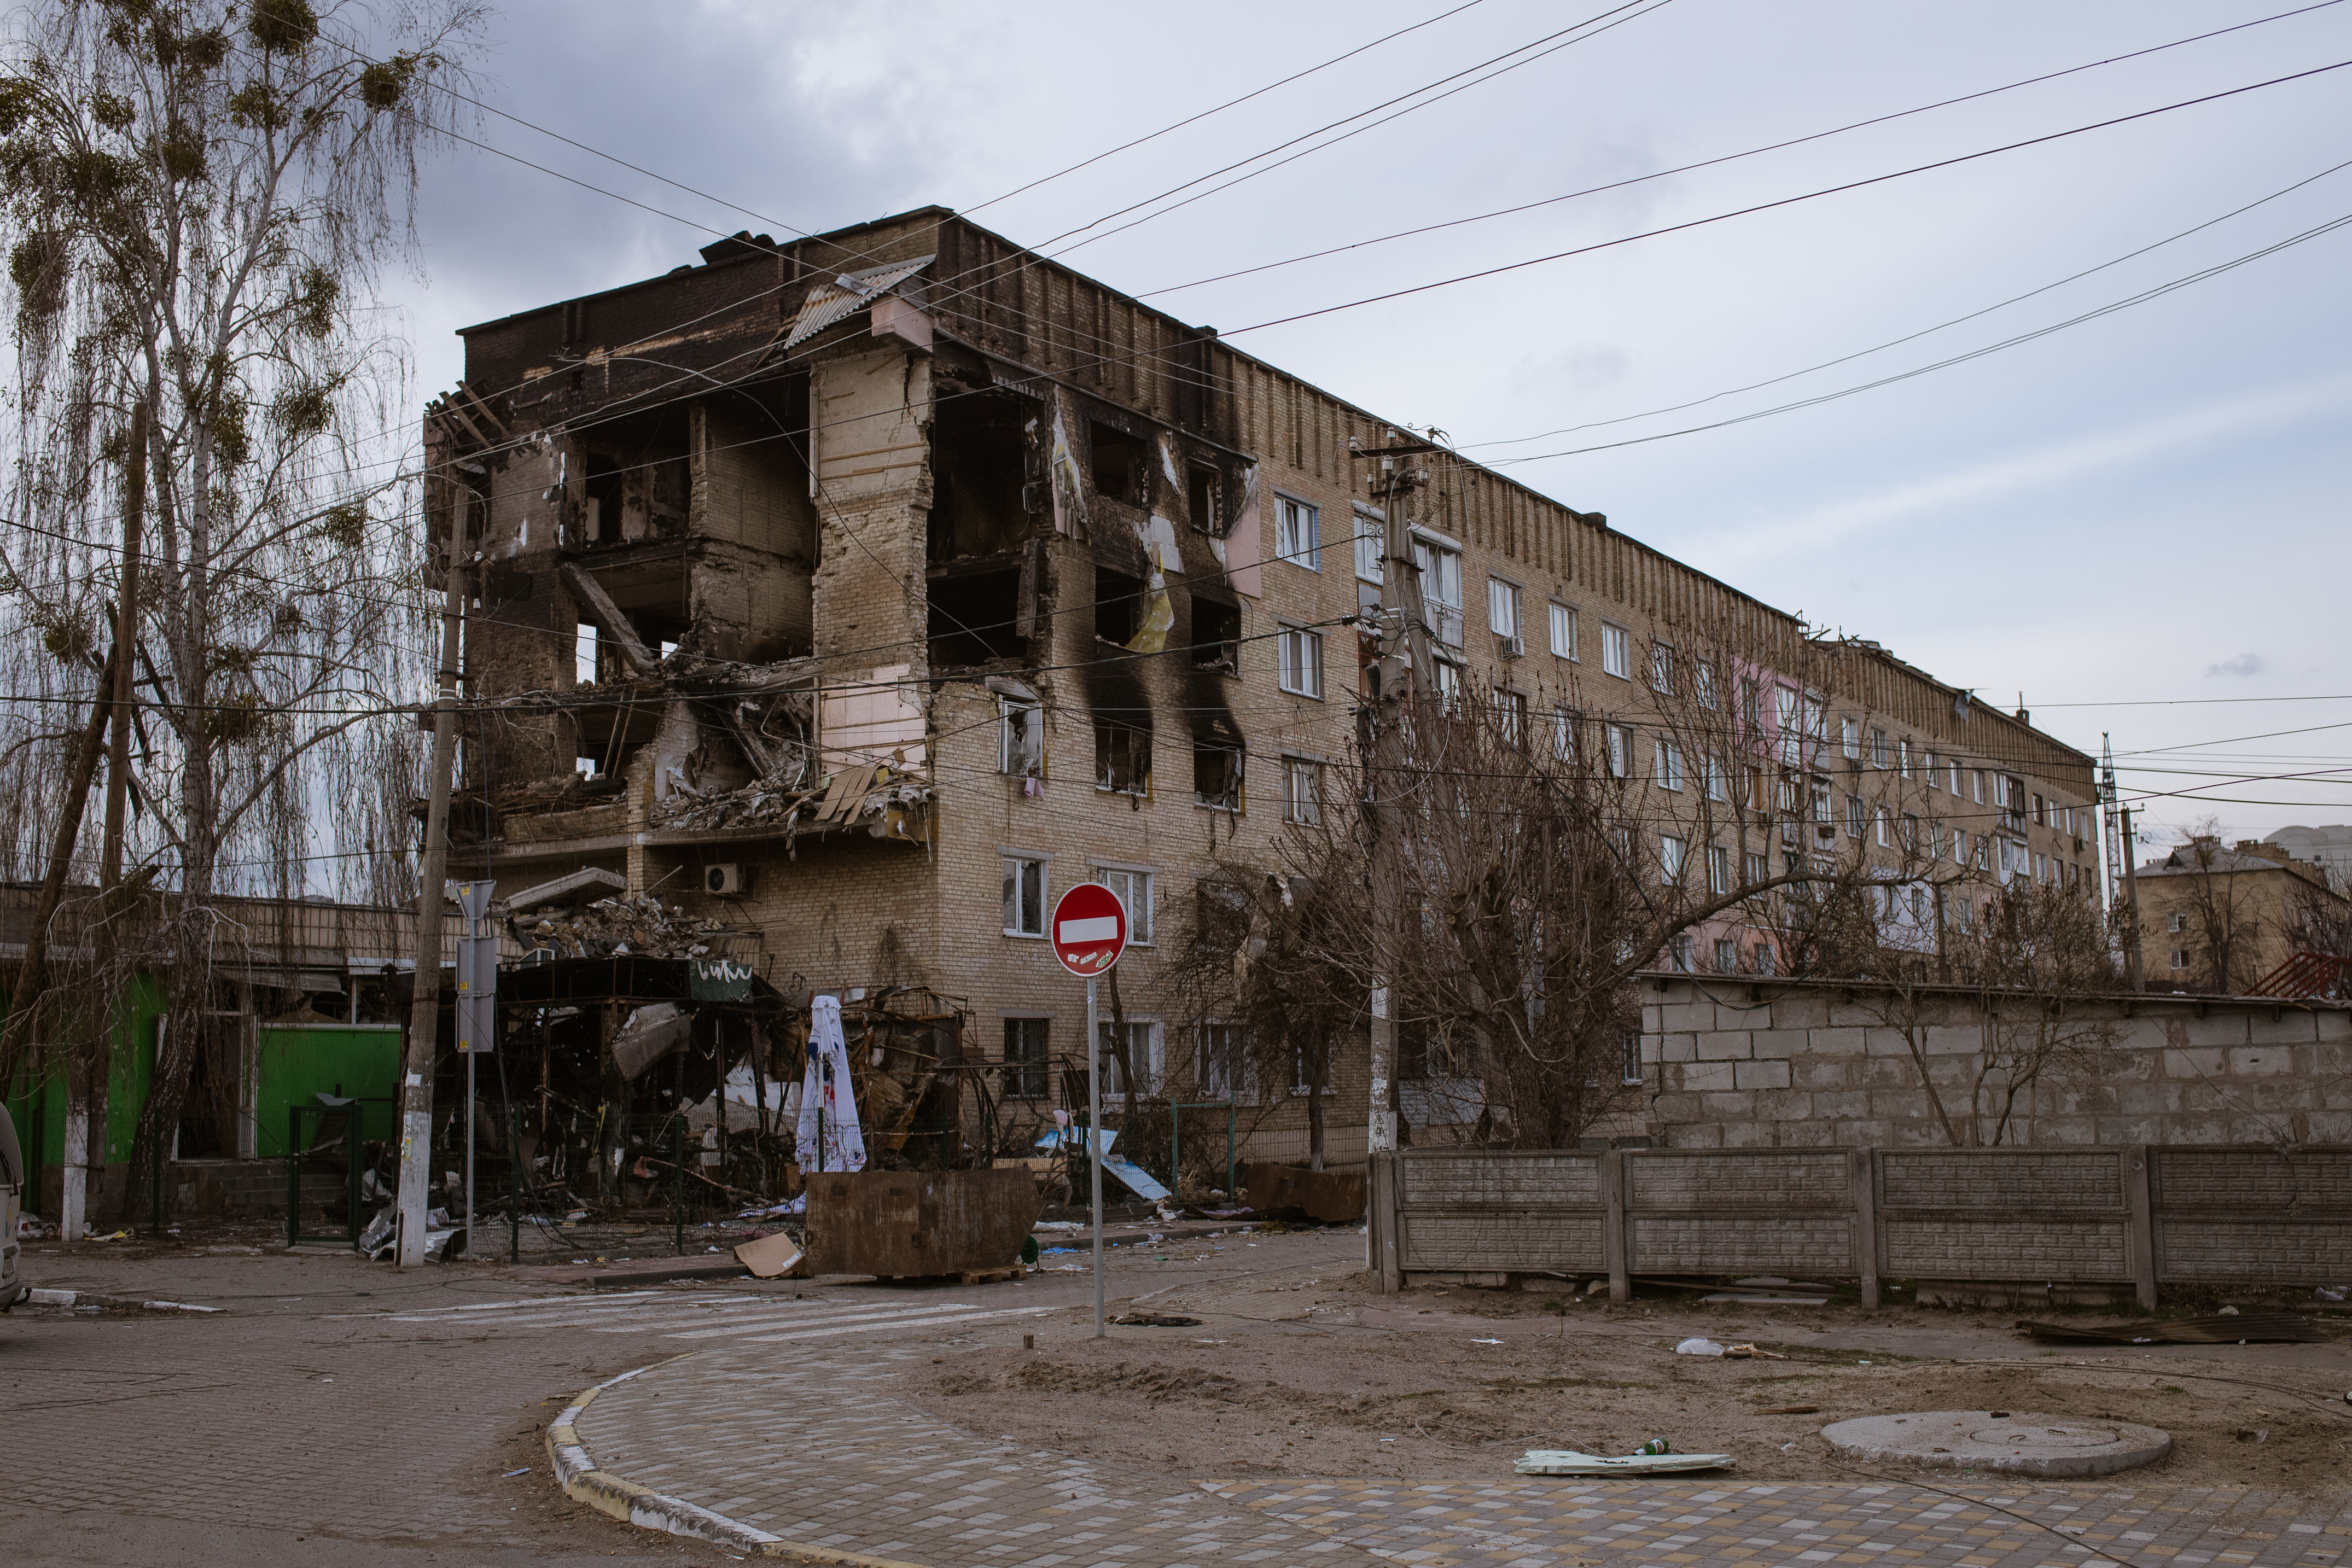 DSÖ: Ukrayna’daki sağlık hizmetlerine saldırıları kınıyoruz